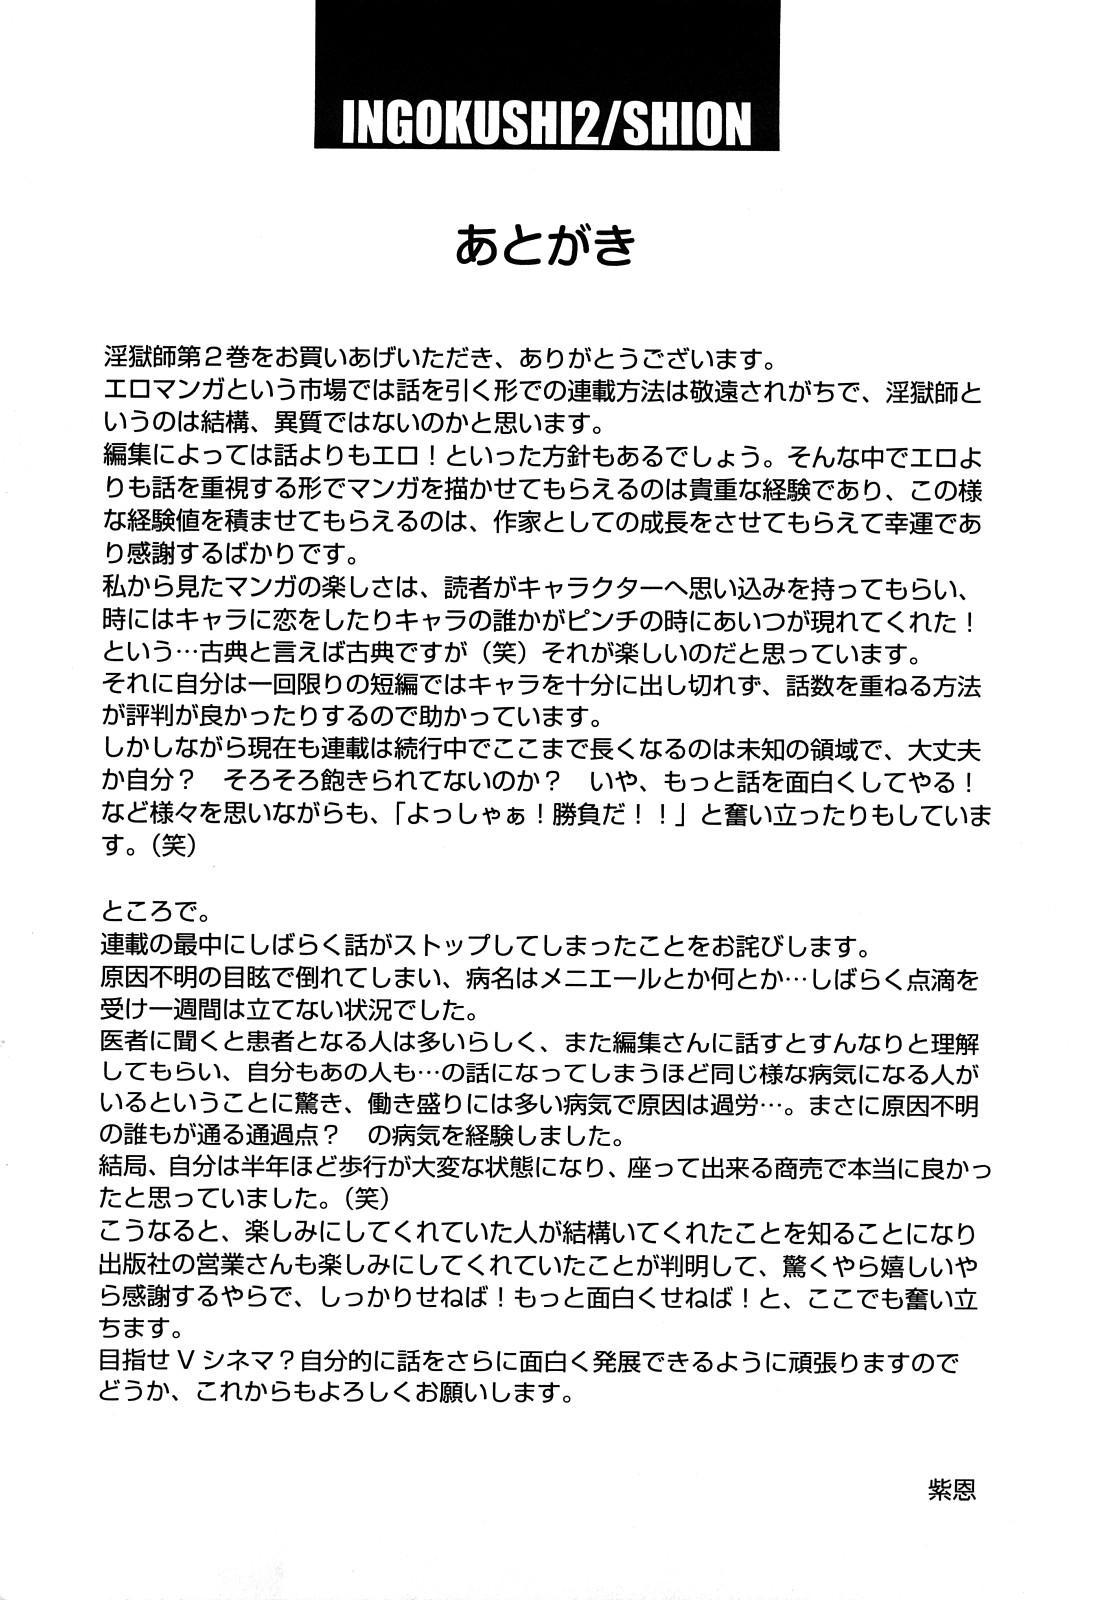 Orgame Bakuetsu no Toriko Ingokushi Anale - Page 167